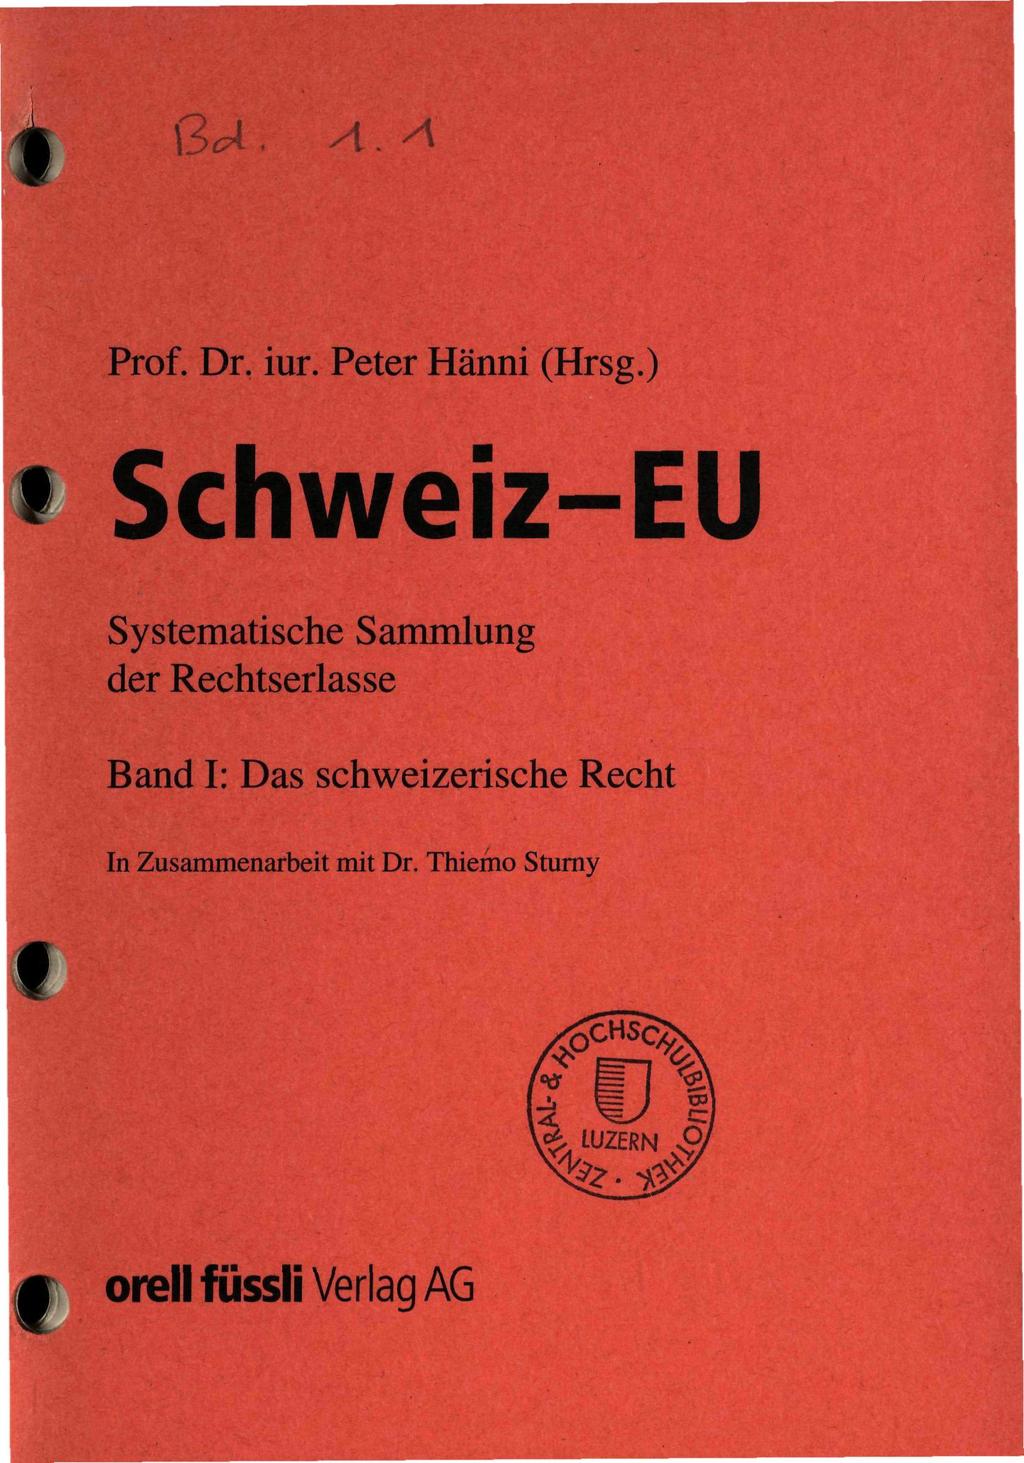 I ß*4. A.A Prof. Dr. iur. Peter Hänni (Hrsg.